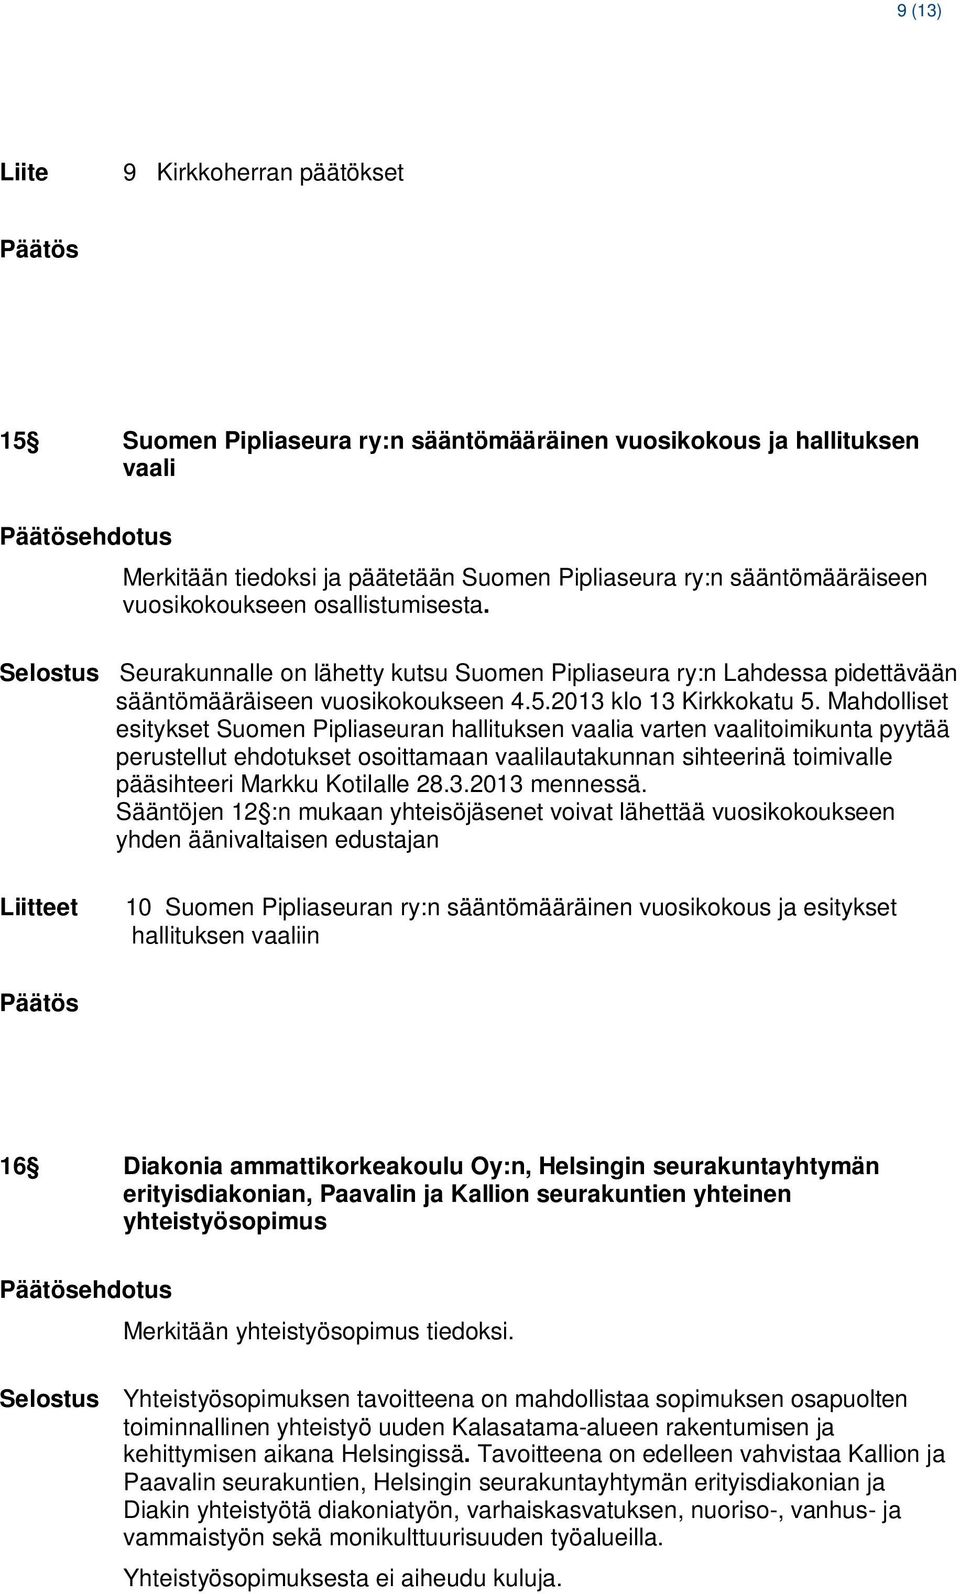 Mahdolliset esitykset Suomen Pipliaseuran hallituksen vaalia varten vaalitoimikunta pyytää perustellut ehdotukset osoittamaan vaalilautakunnan sihteerinä toimivalle pääsihteeri Markku Kotilalle 28.3.